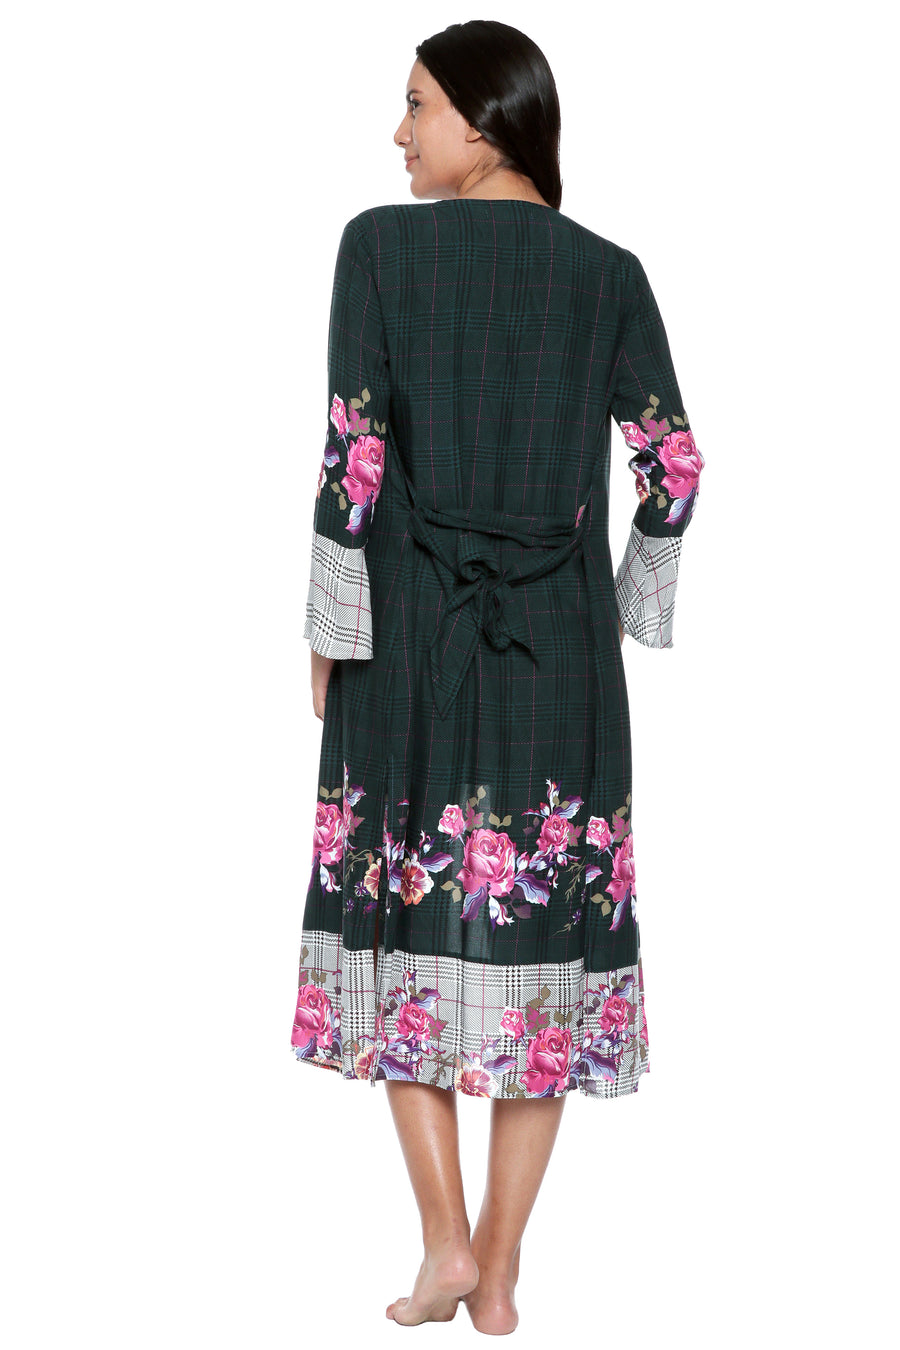 Plaid Floral Kimono in Cotton-Viscose Blend